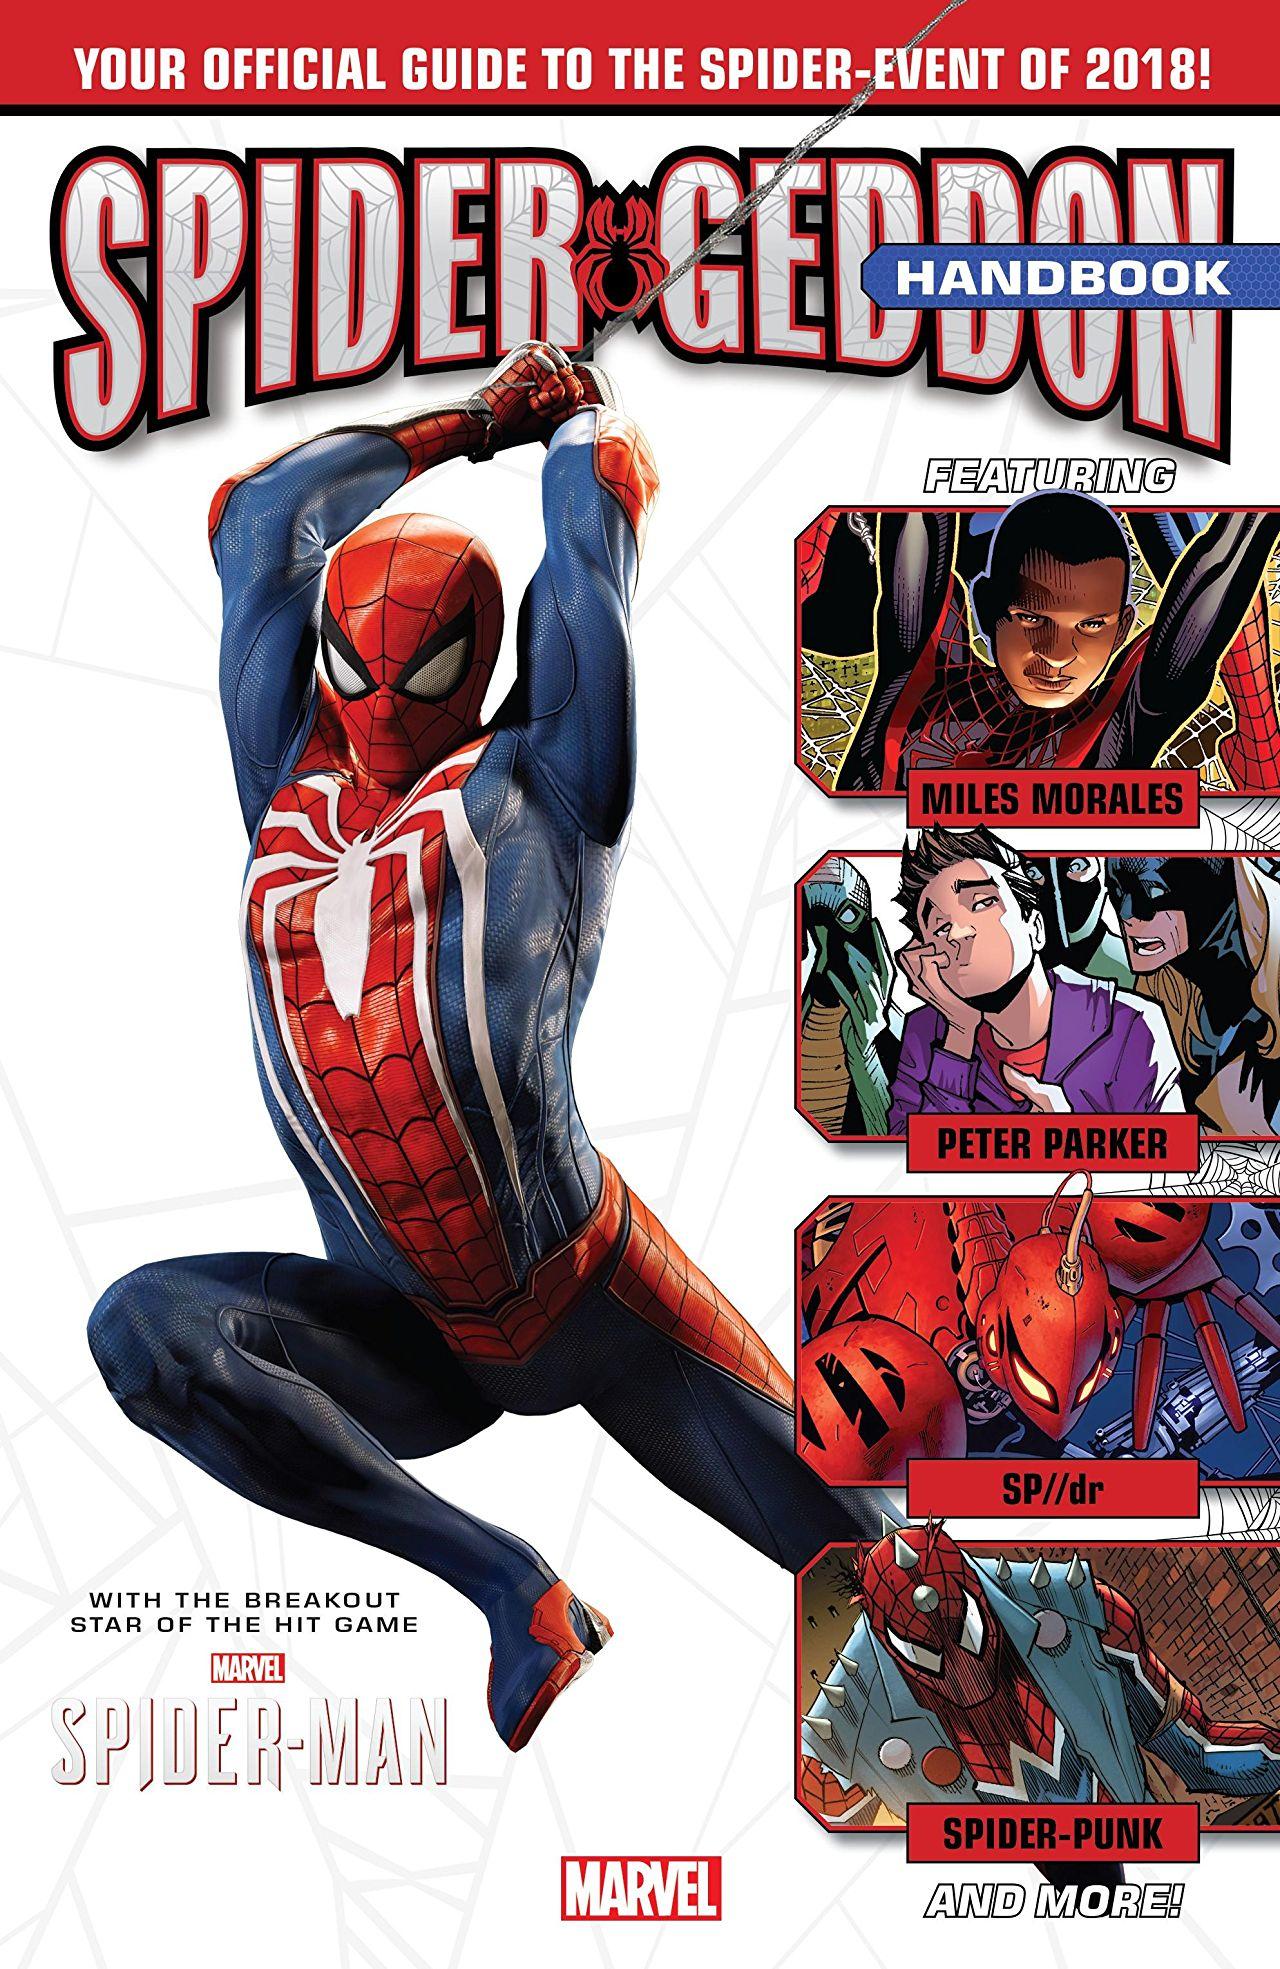 Spider-Geddon Handbook Vol. 1 #1